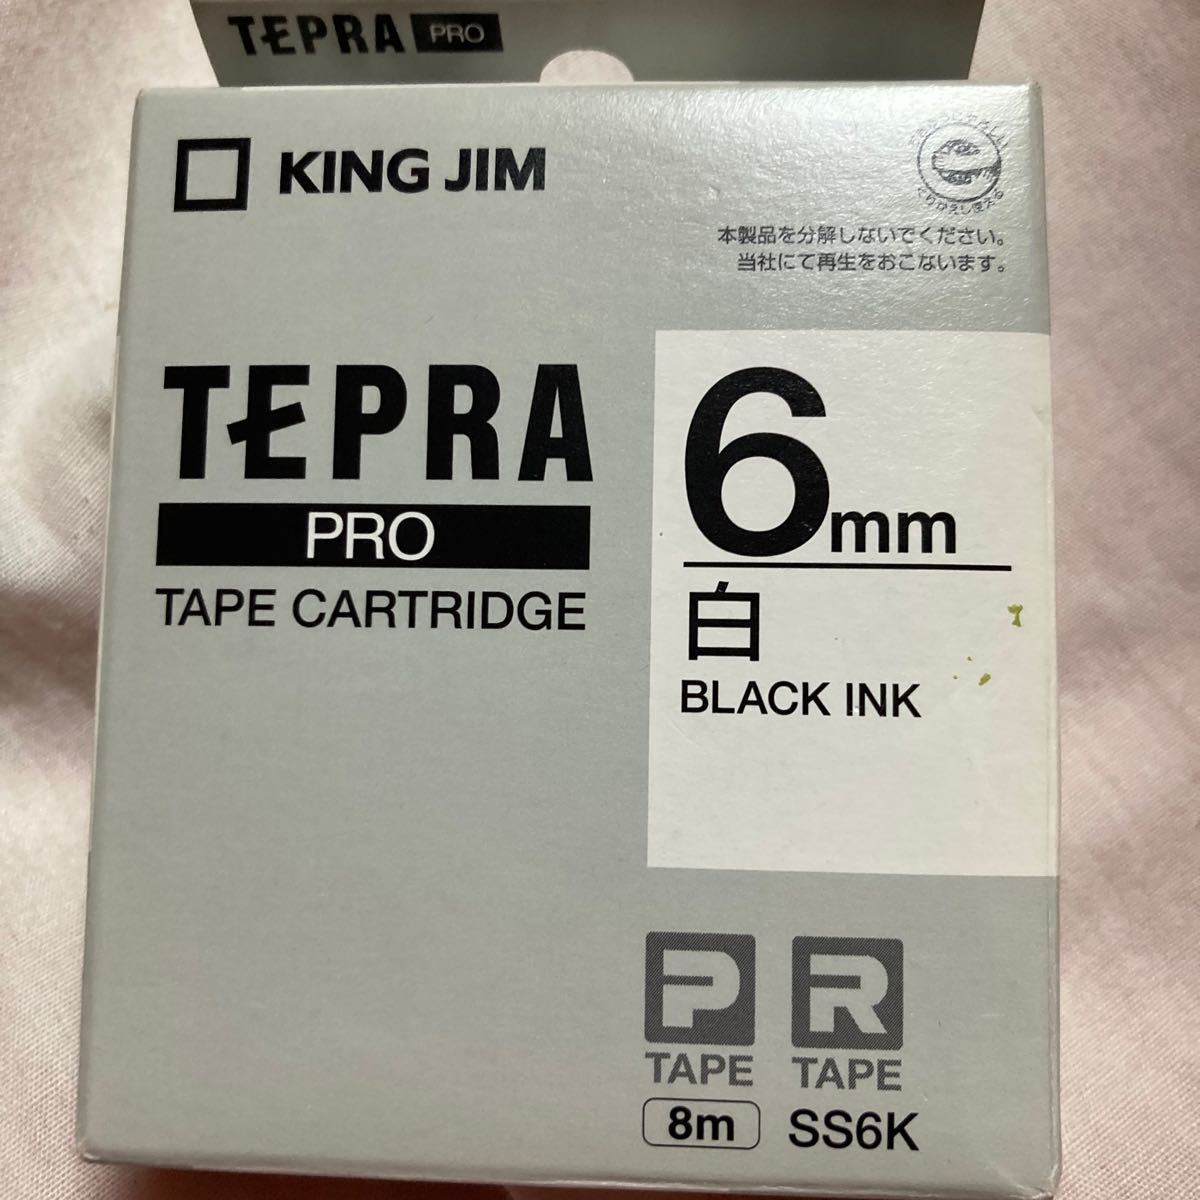 テプラ 白・6mm KING JIM テプラPRO キングジム テプラテープ TEPRA 長さ 純正品 テプラプロ テプラ